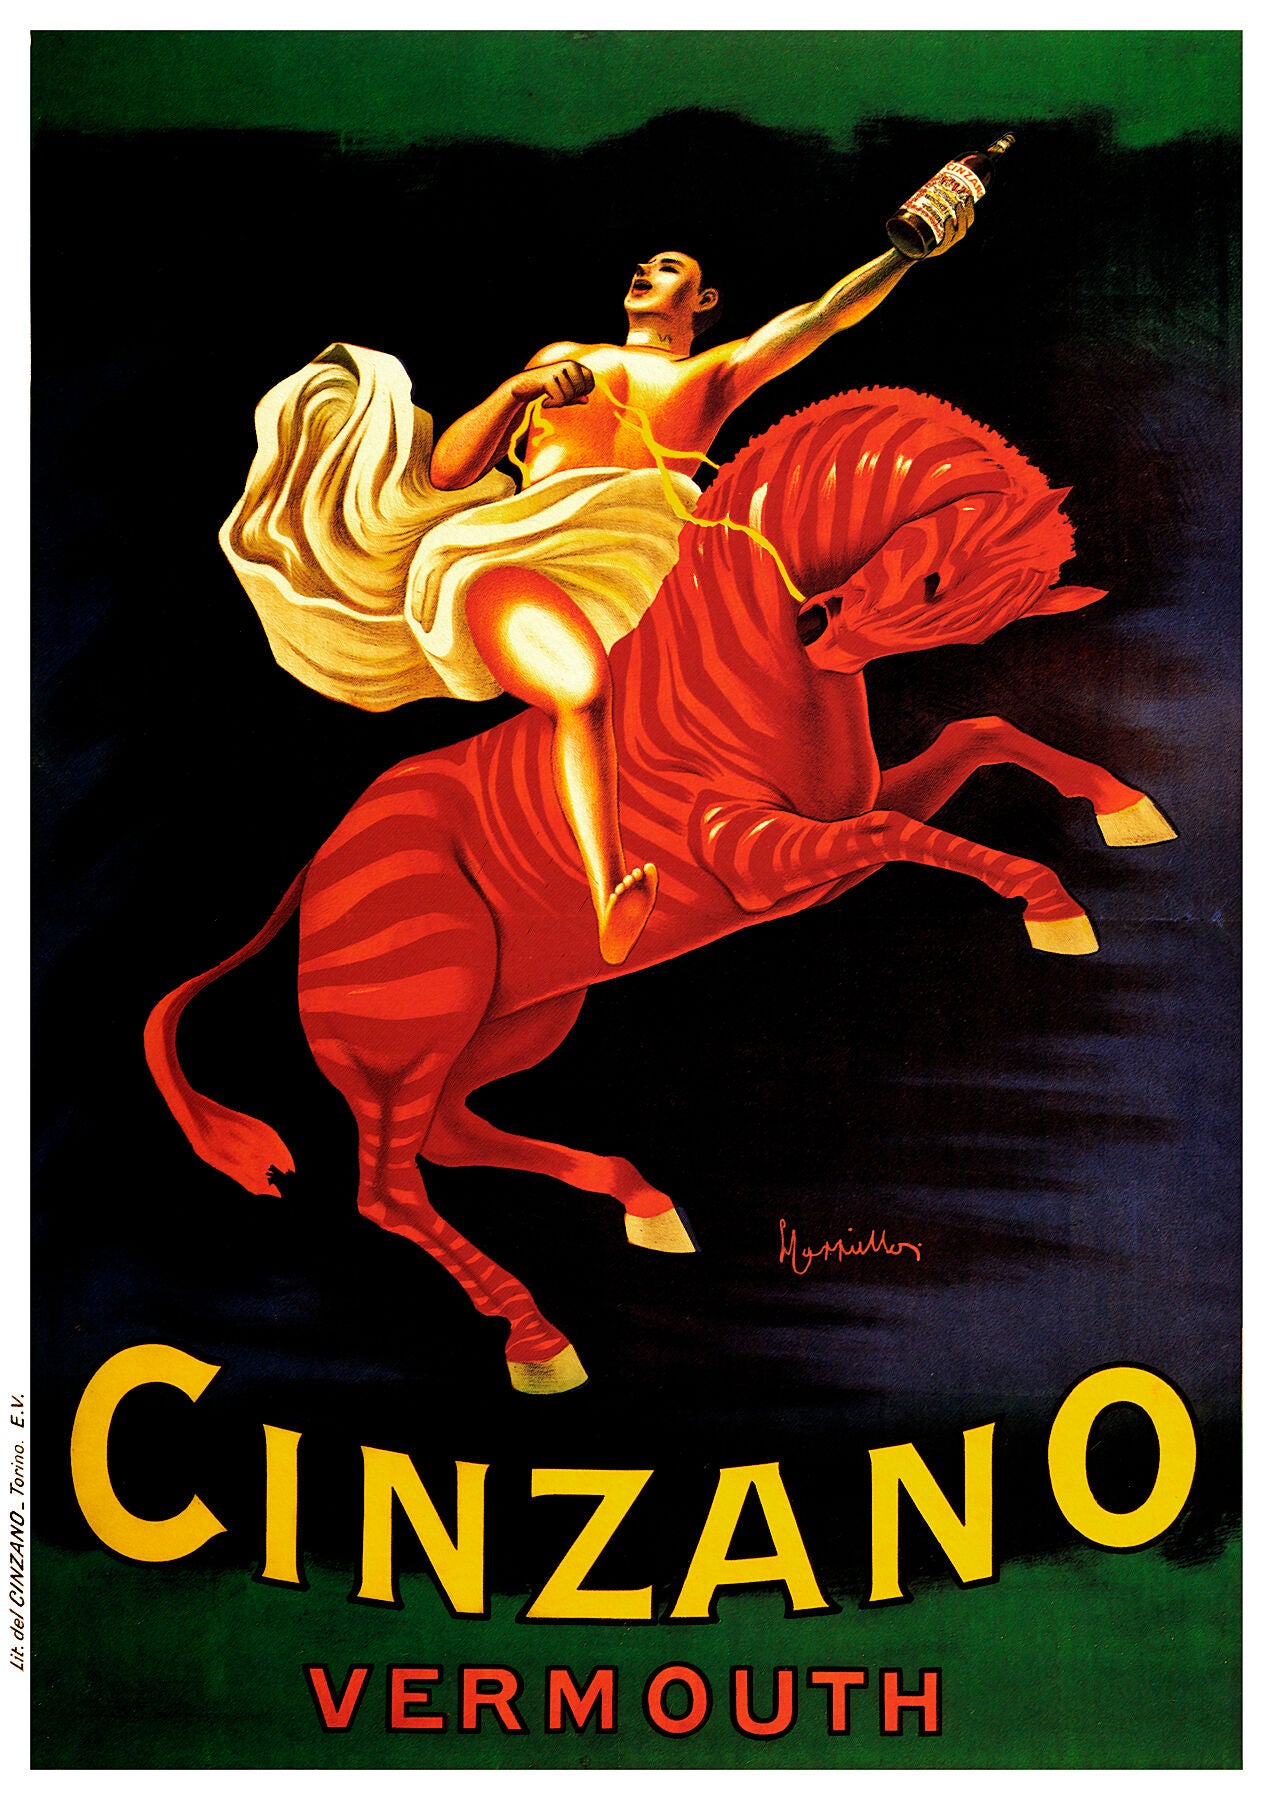 Cinzano Vermouth poster by Leonetto Cappiello